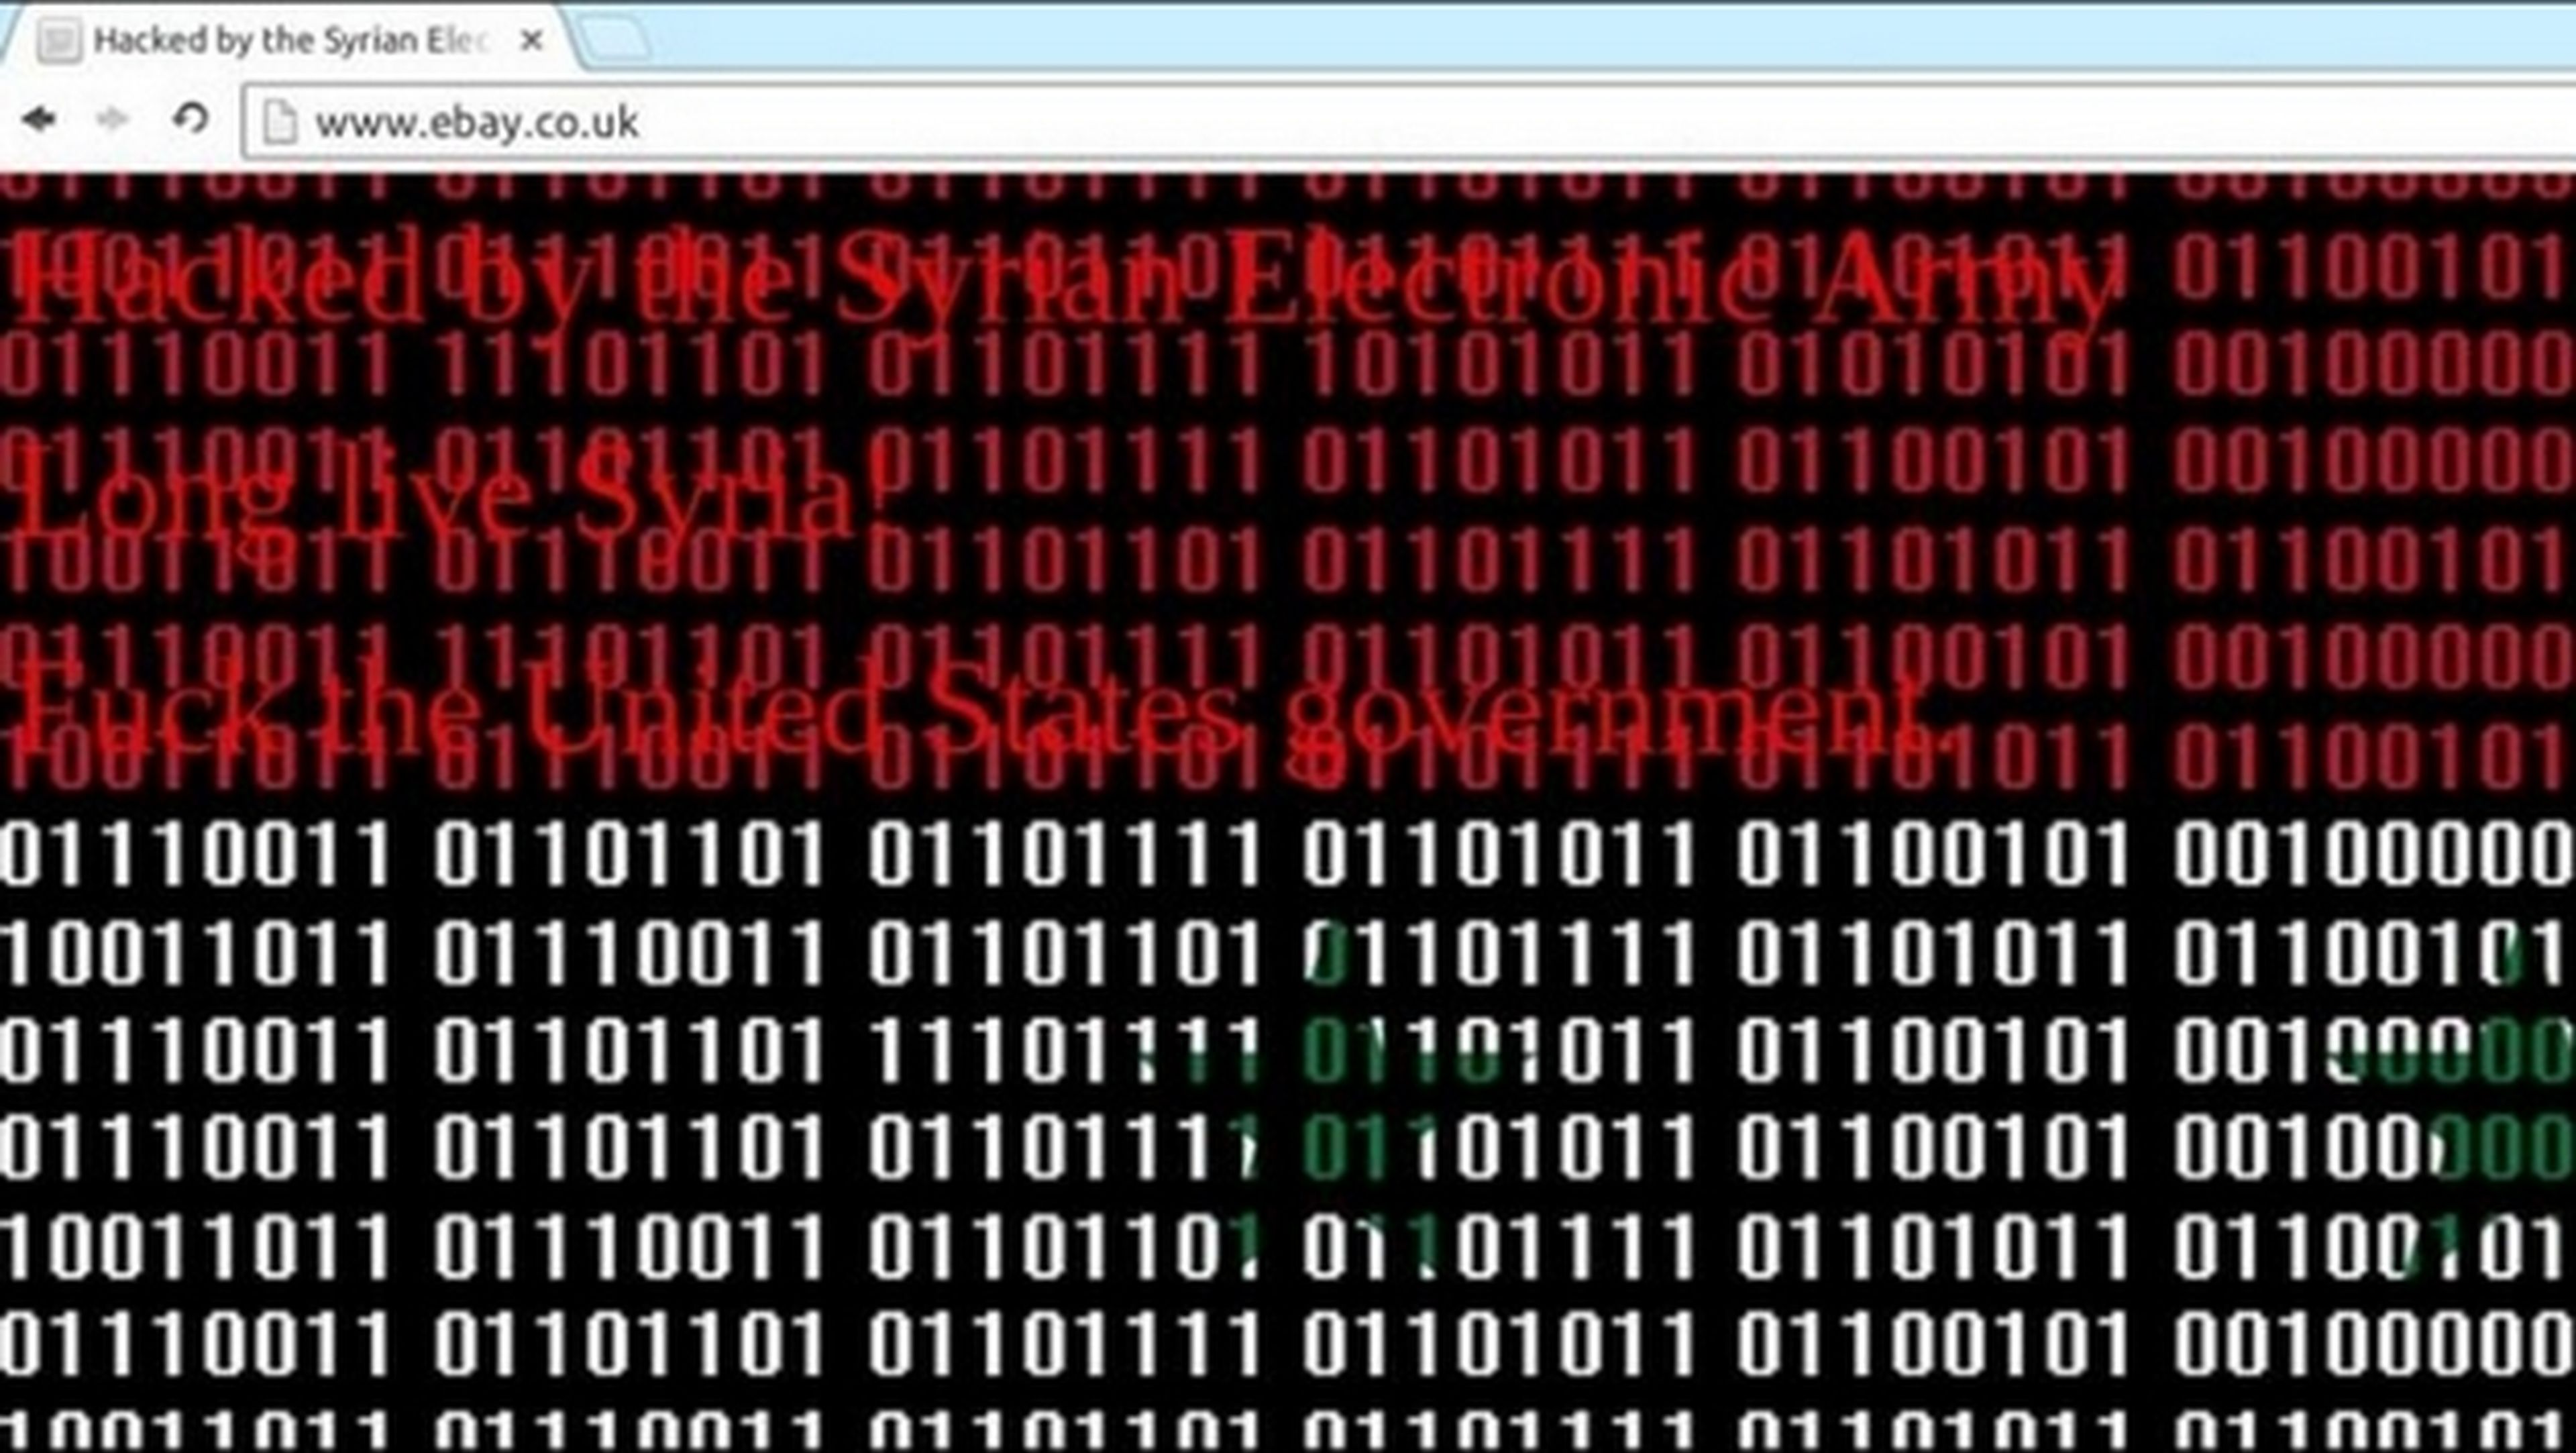 El grupo de hackers Ejército Electrónico Sirio hackea PayPal y eBay. No se ha accedido a datos de usuarios.